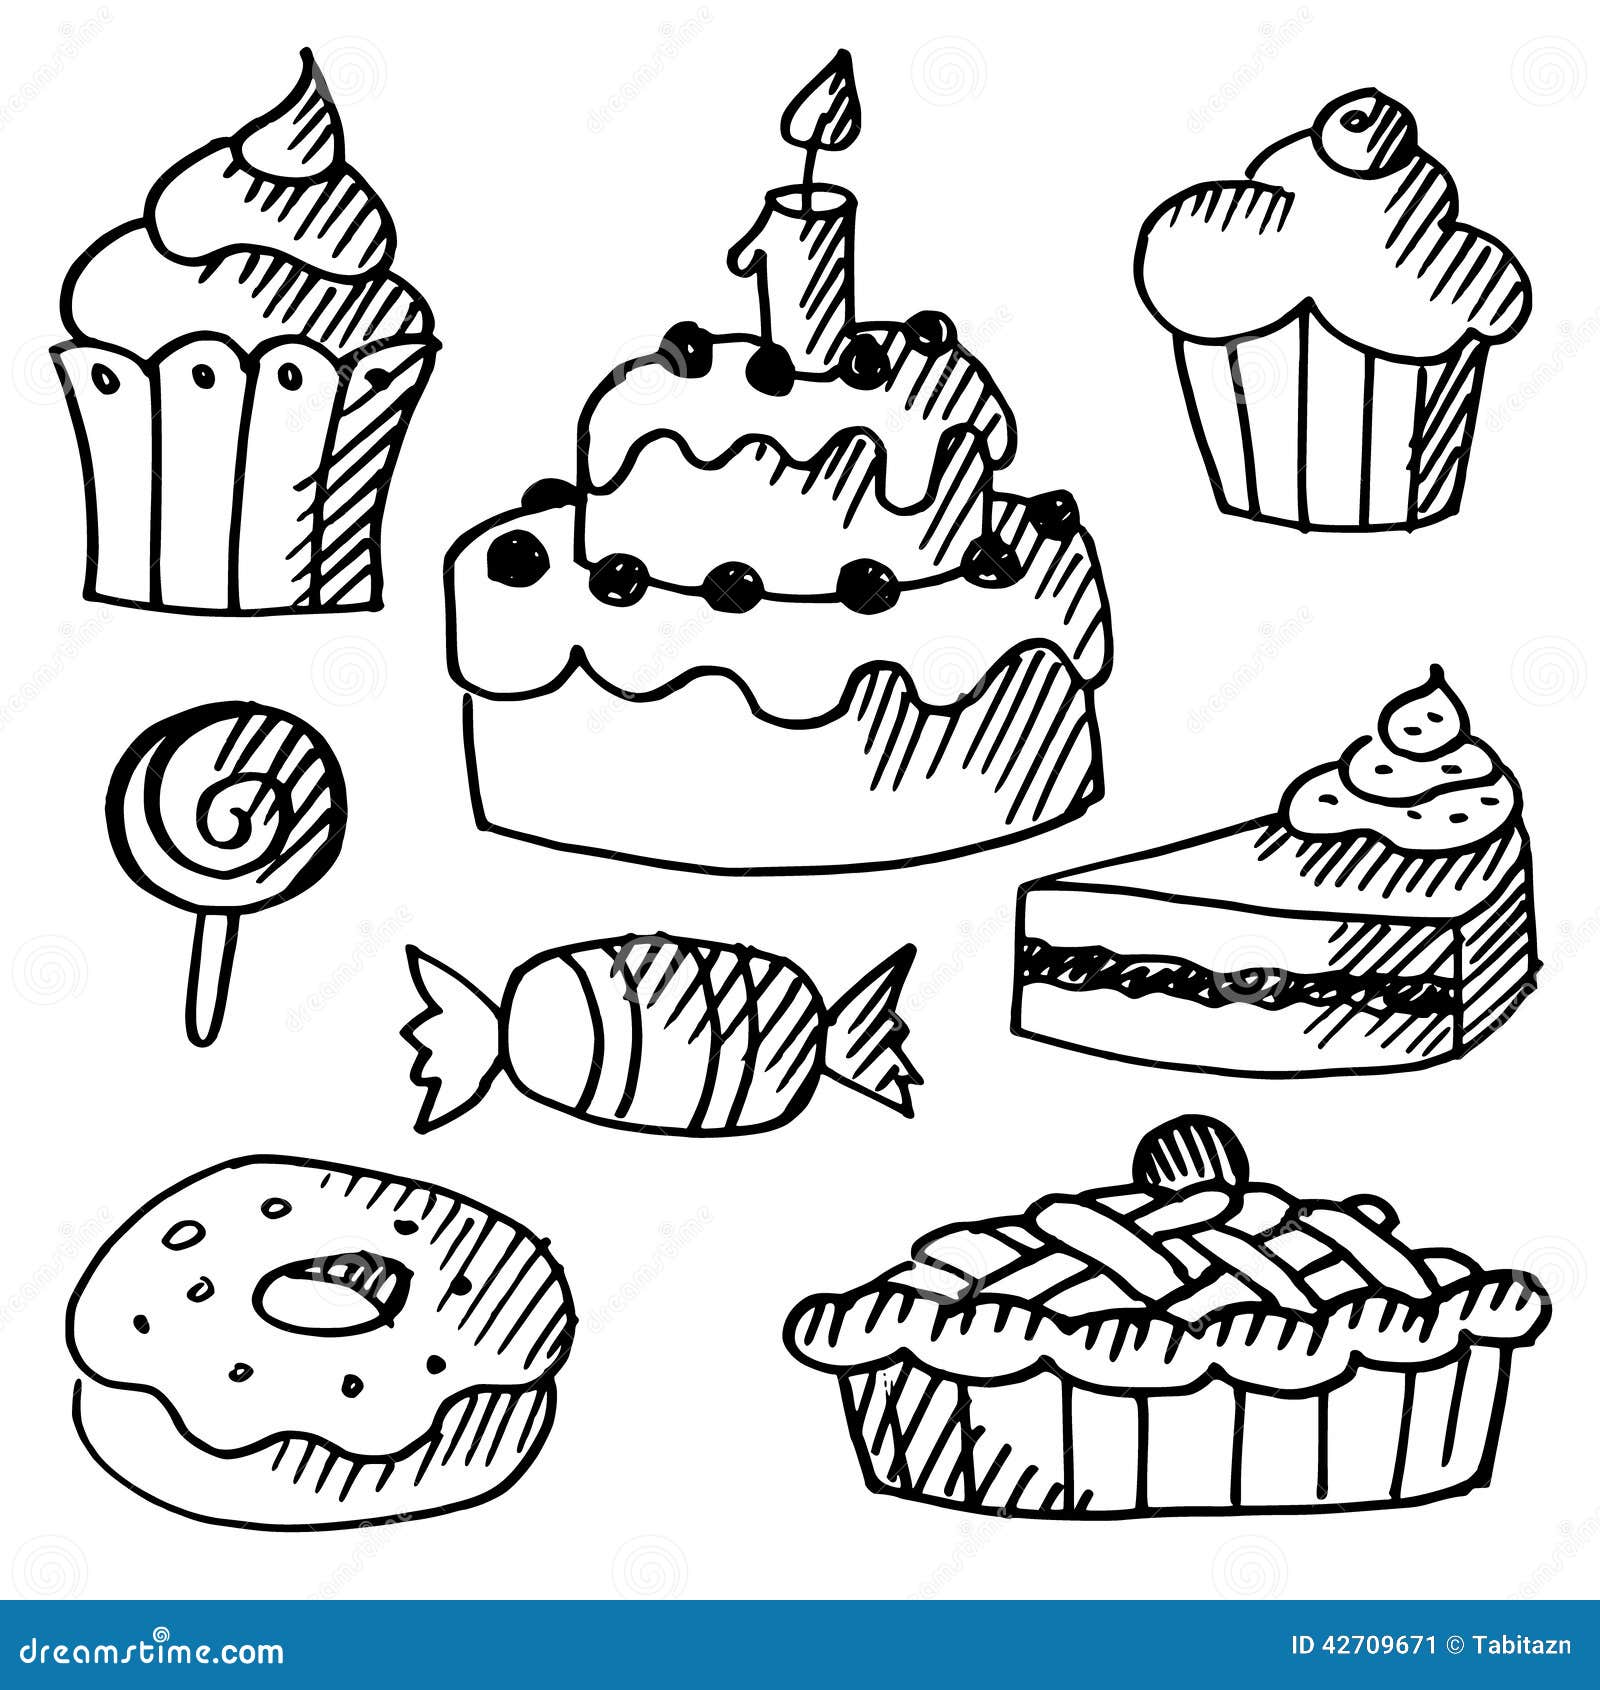 Σύνολο κέικ, cupcakes, γλυκά, doodle σκίτσα. Το σύνολο διάφορων γλυκών, κέικ και cupcakes, ο Μαύρος απομόνωσε doodle τα σκίτσα, απεικονίσεων